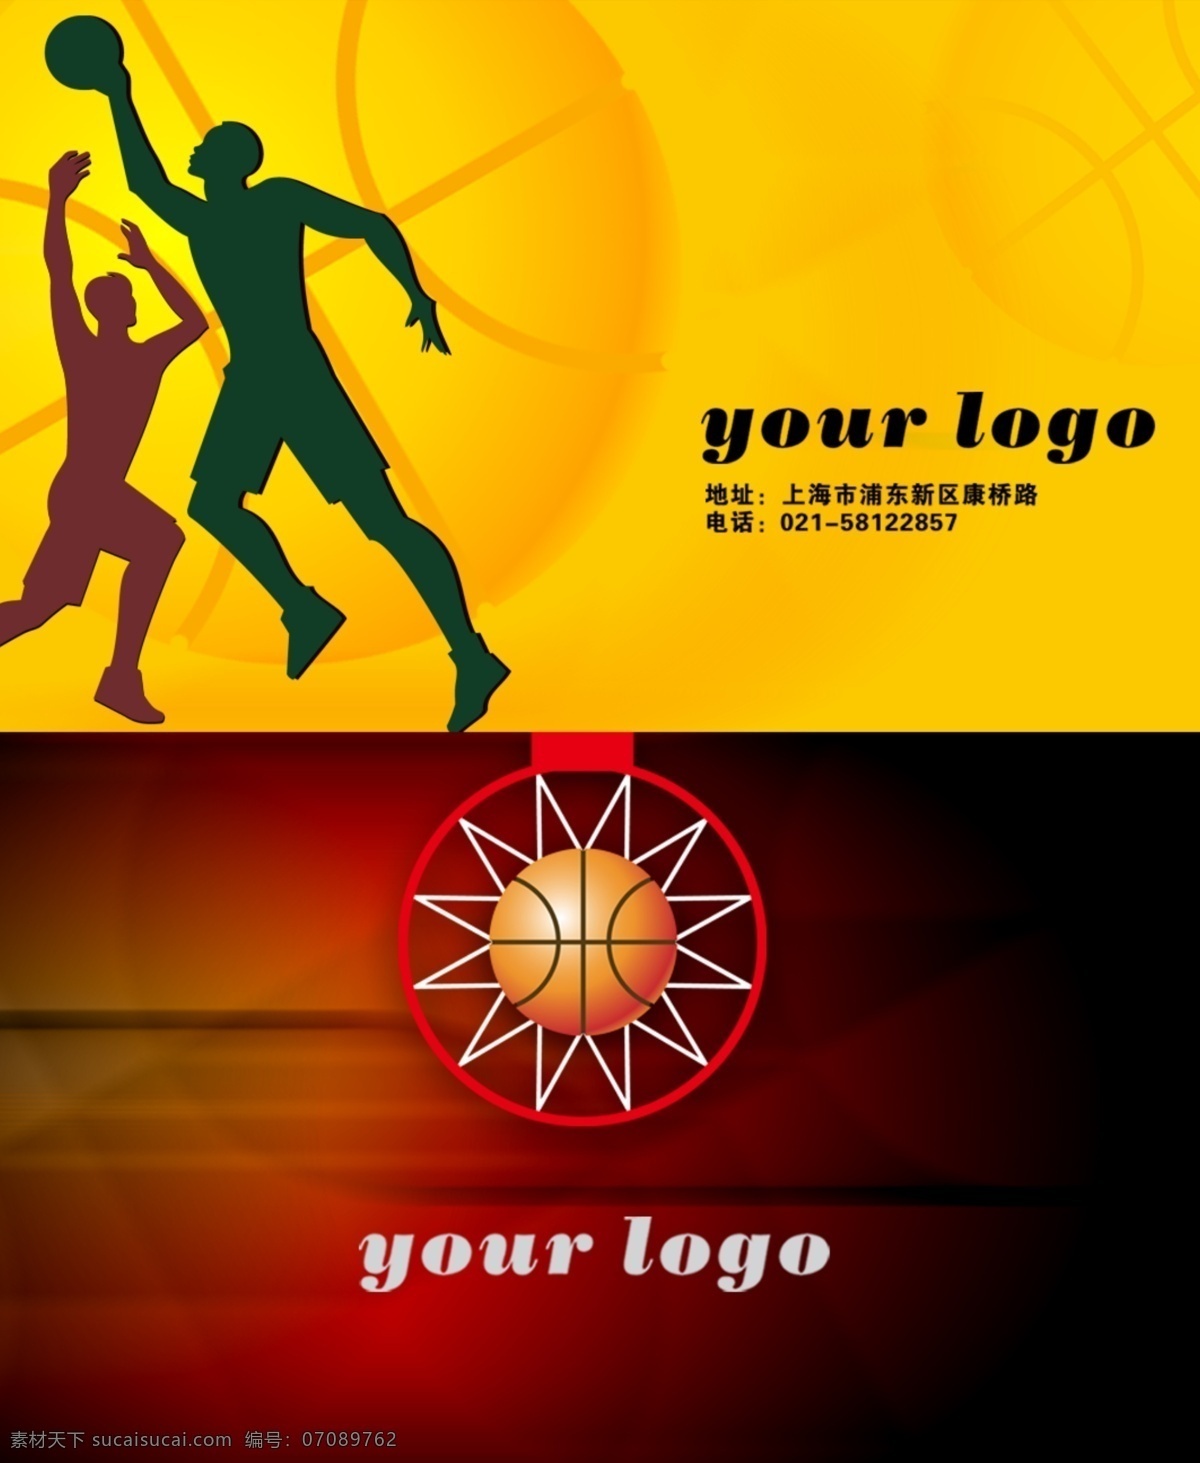 篮球 横 版 名片 适用 俱乐部 内部人 员 使用 红色 黄色 背景 时尚 大气 人物 灌篮 相互 映衬